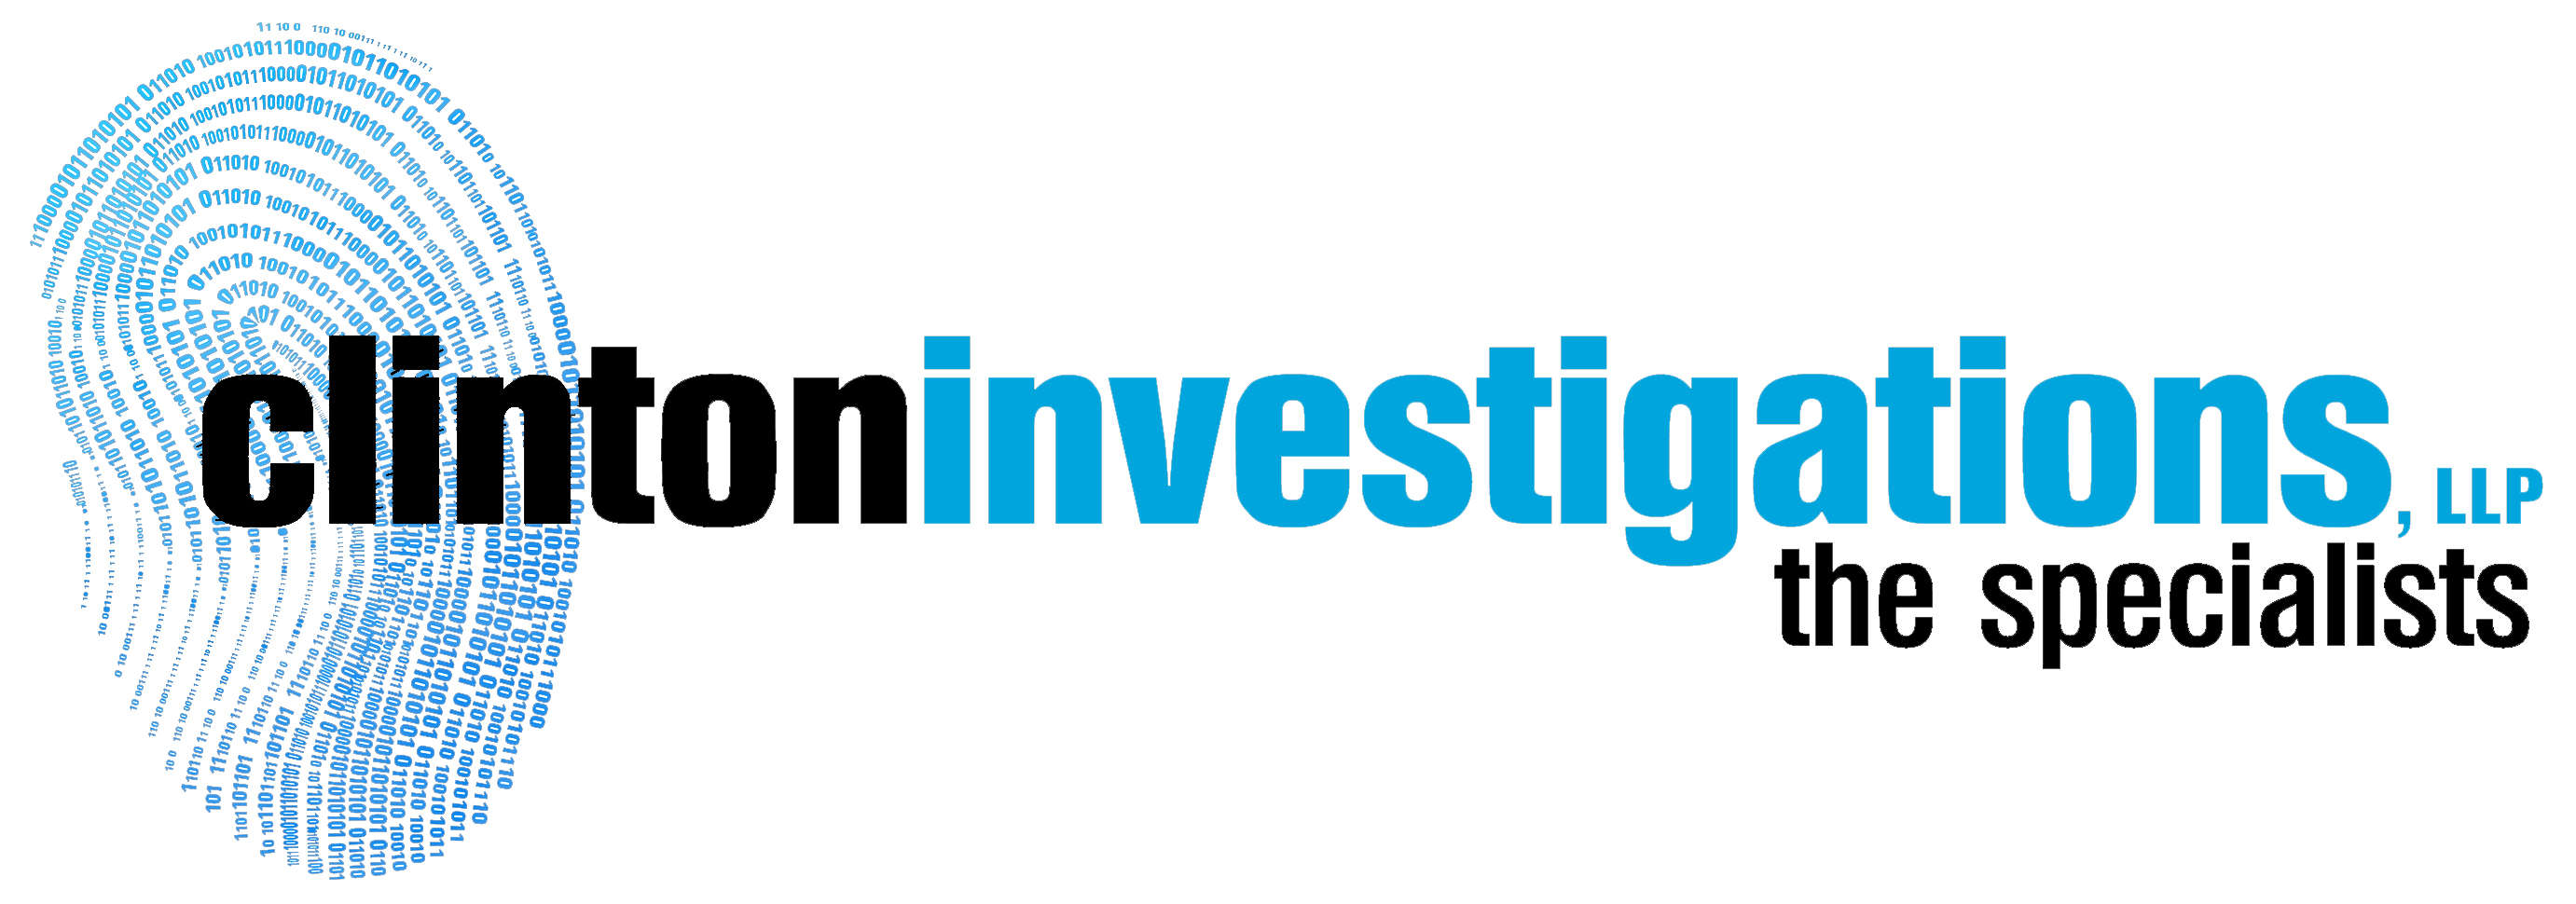 Clinton Investigations, LLP Logo